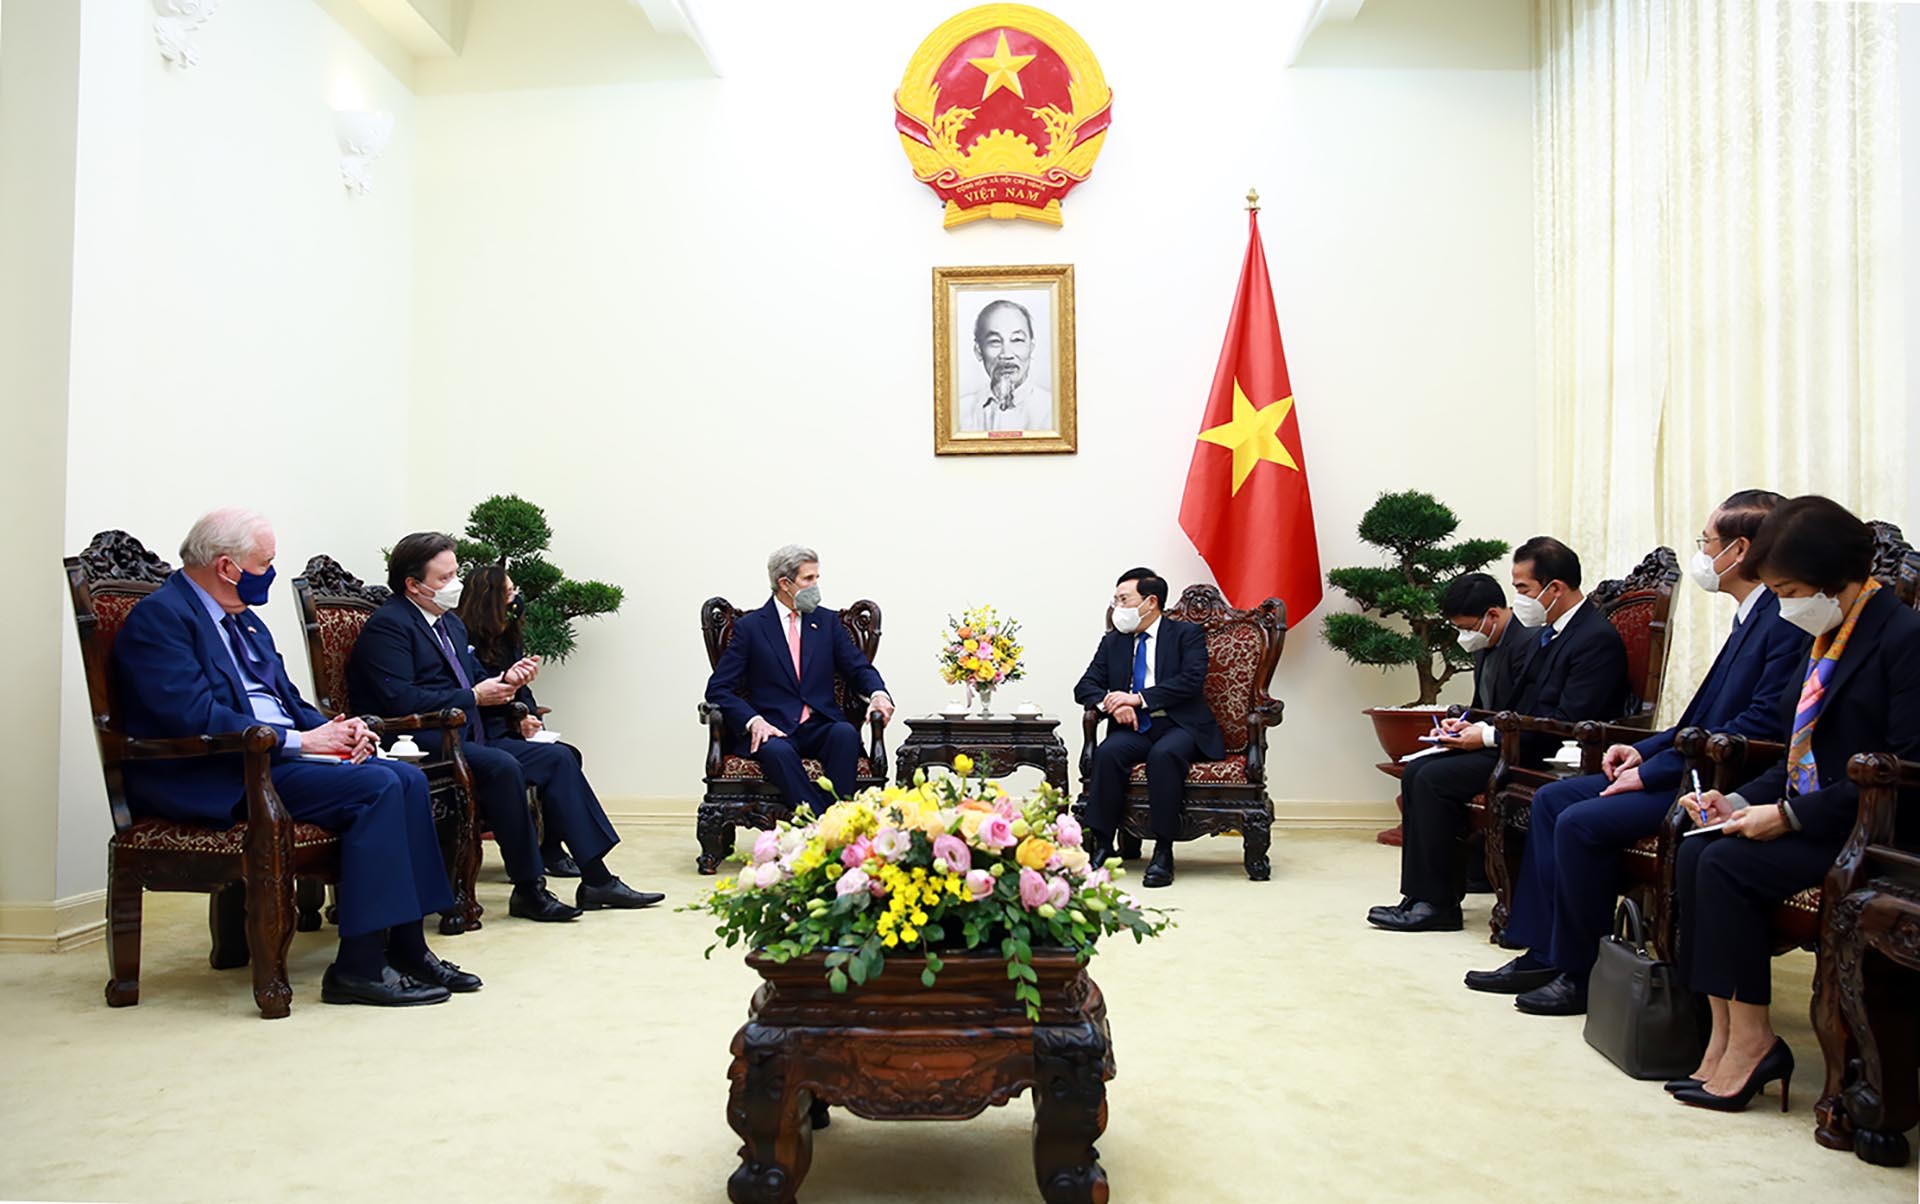 Phó Thủ tướng Thường trực Phạm Bình Minh tiếp Đặc phái viên của Tổng thống Hoa Kỳ, ông John Kerry đang ở thăm thăm Việt Nam. (Nguồn: VGP)